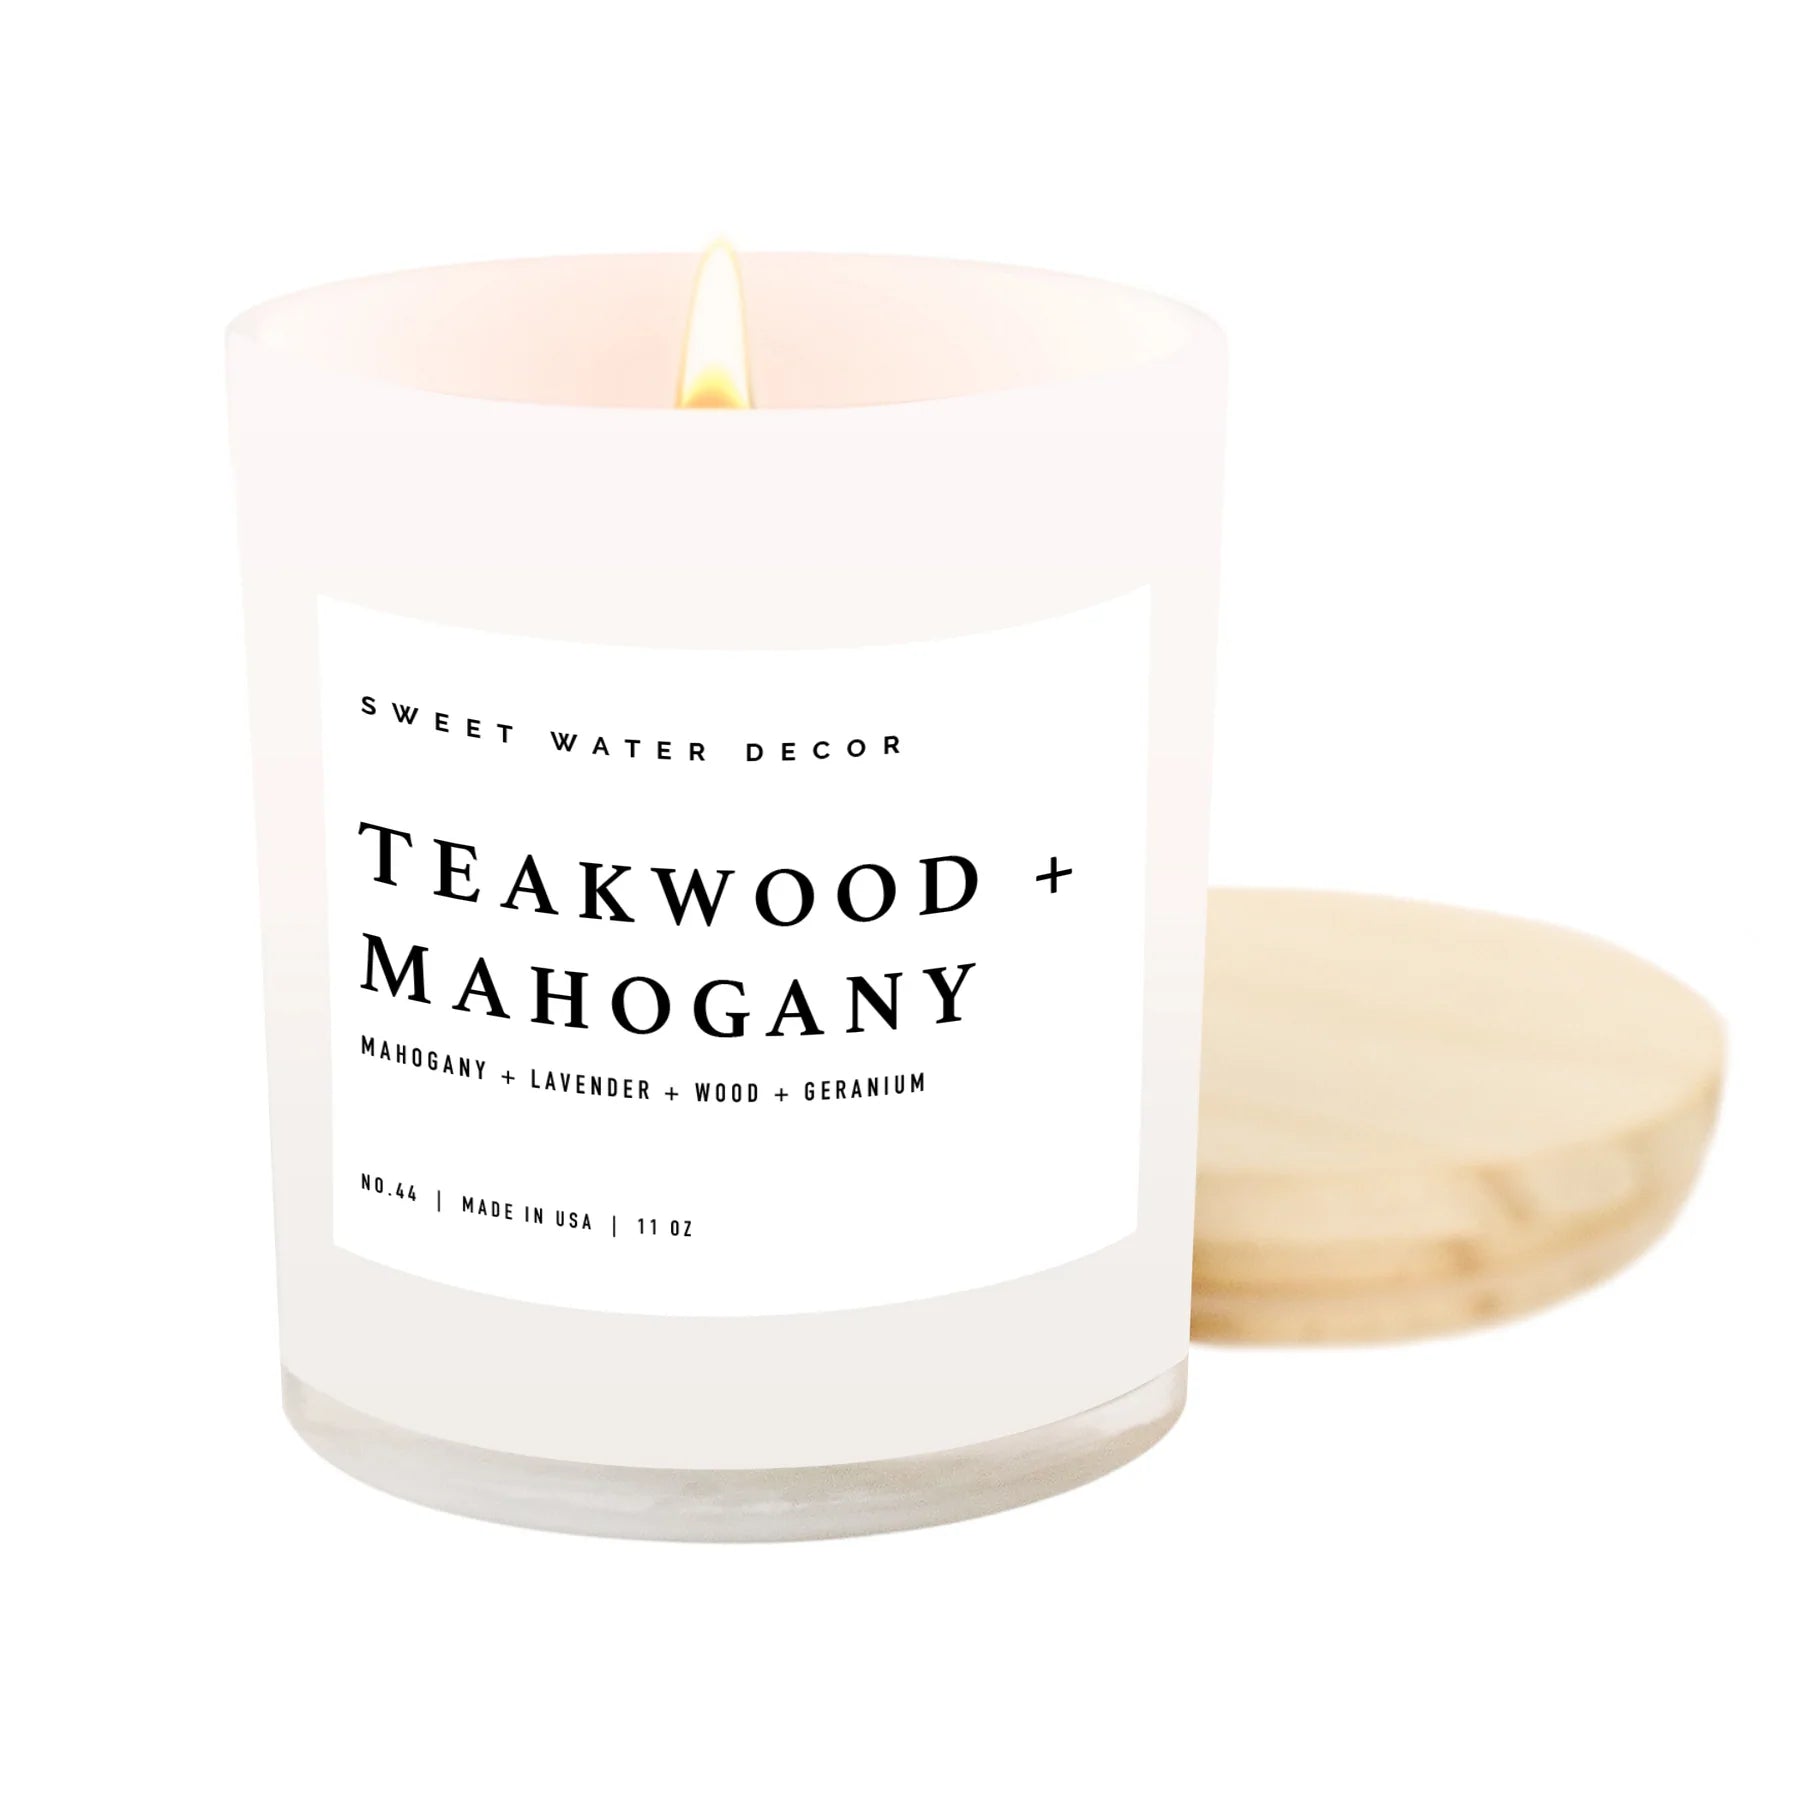 Sweet Water Decor Teakwood & Mahogany Soy Candle - 11 oz. White Jar